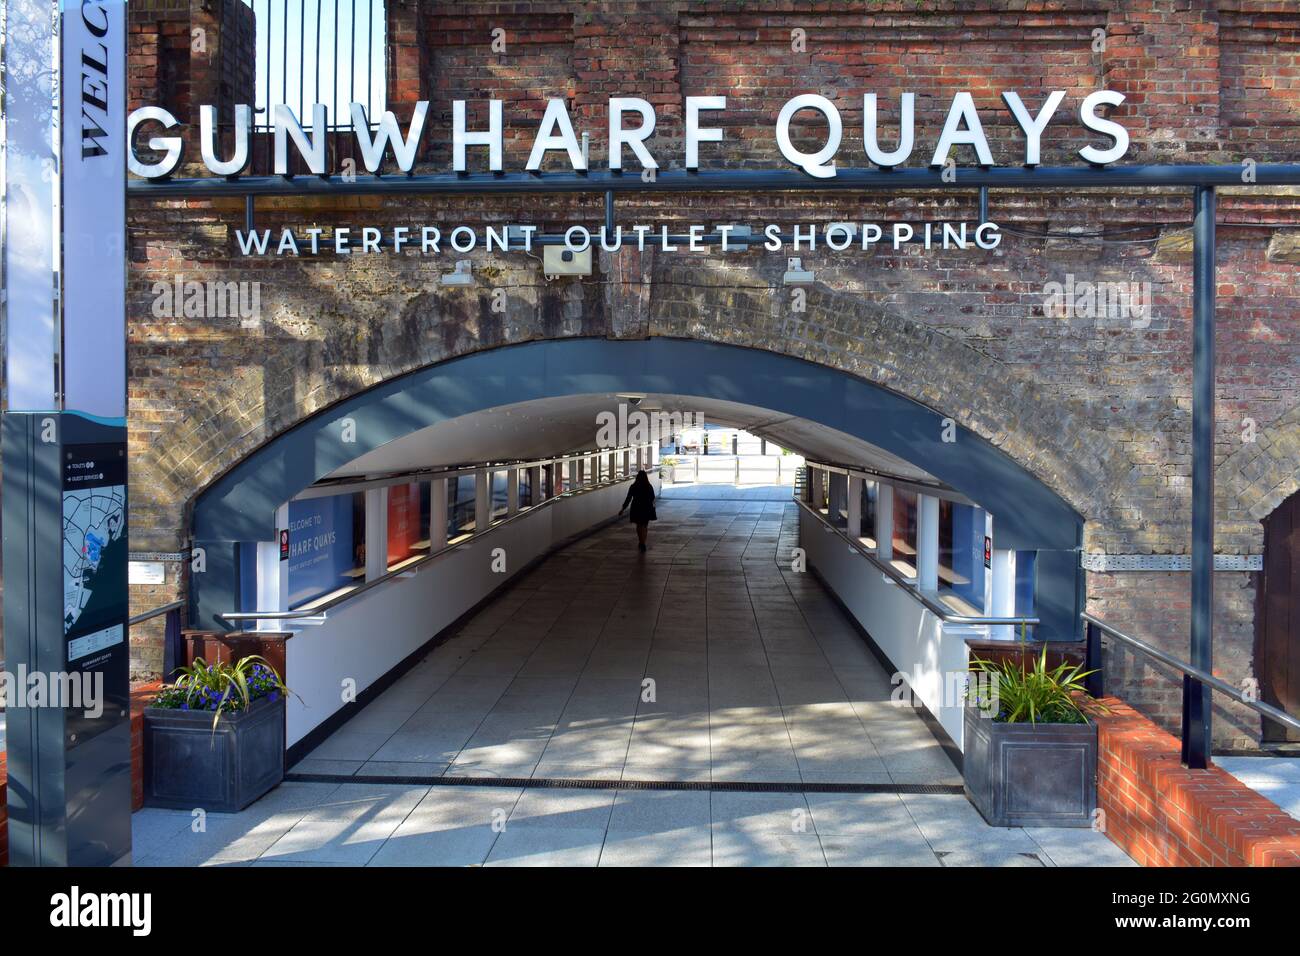 Einer der Eingänge zum Gunwharf Quays Shopping Outlet in Portsmouth. Dieser geht unter der Eisenbahnlinie vom Hafen von Portsmouth. Stockfoto